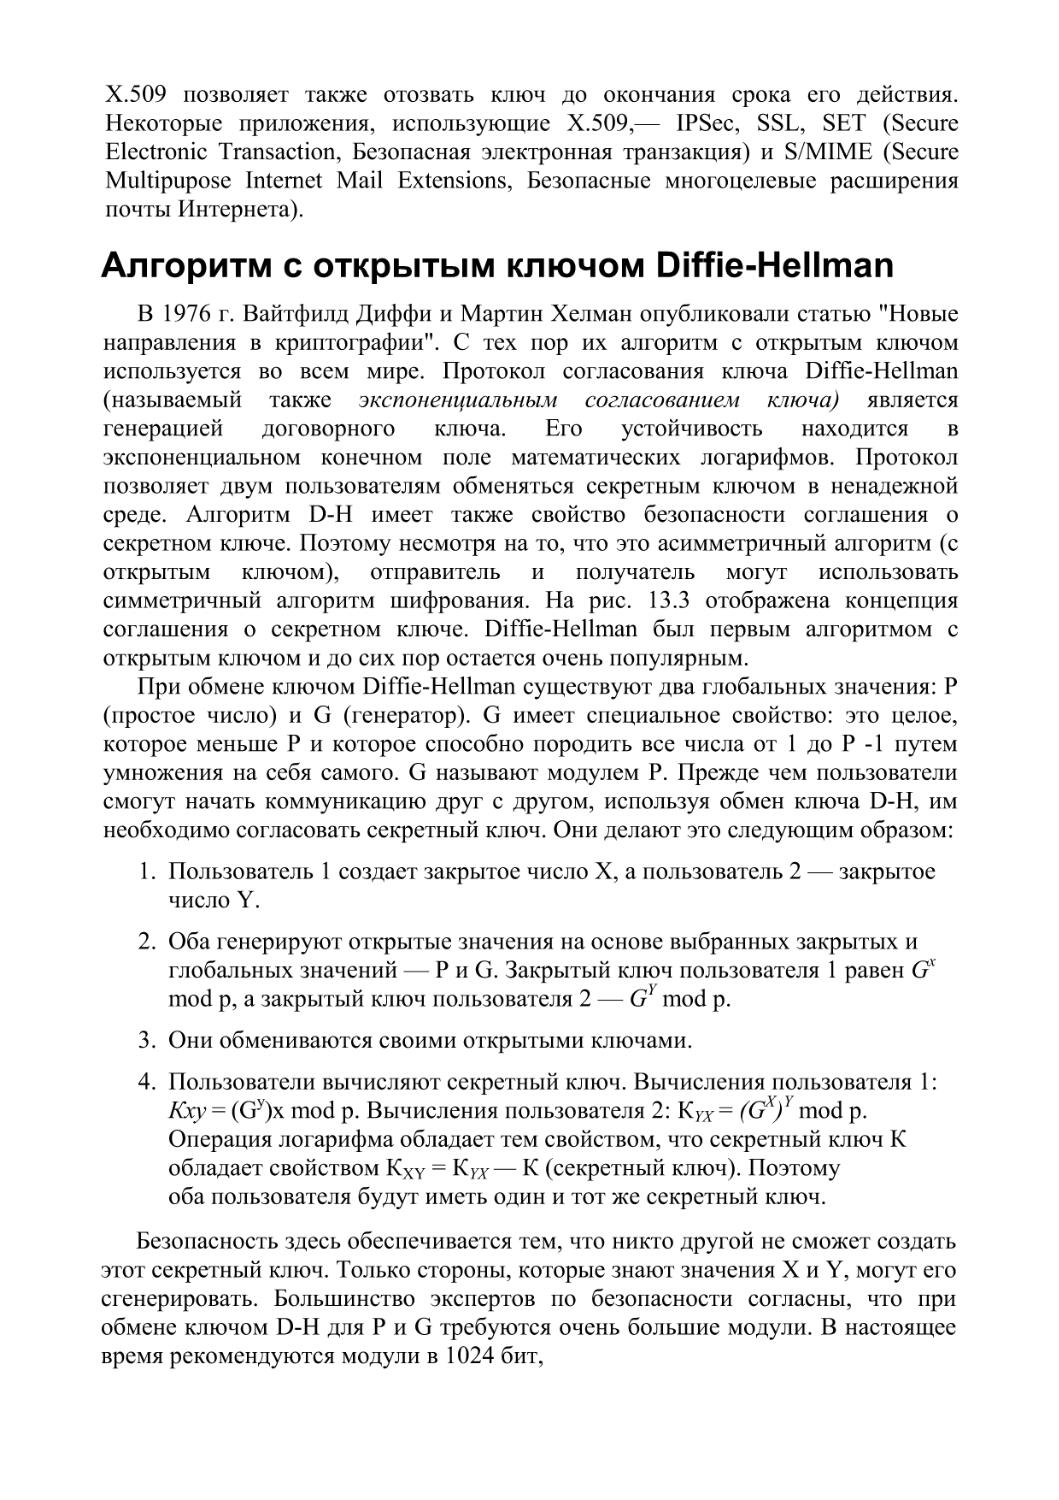 Алгоритм с открытым ключом Diffie-Hellman